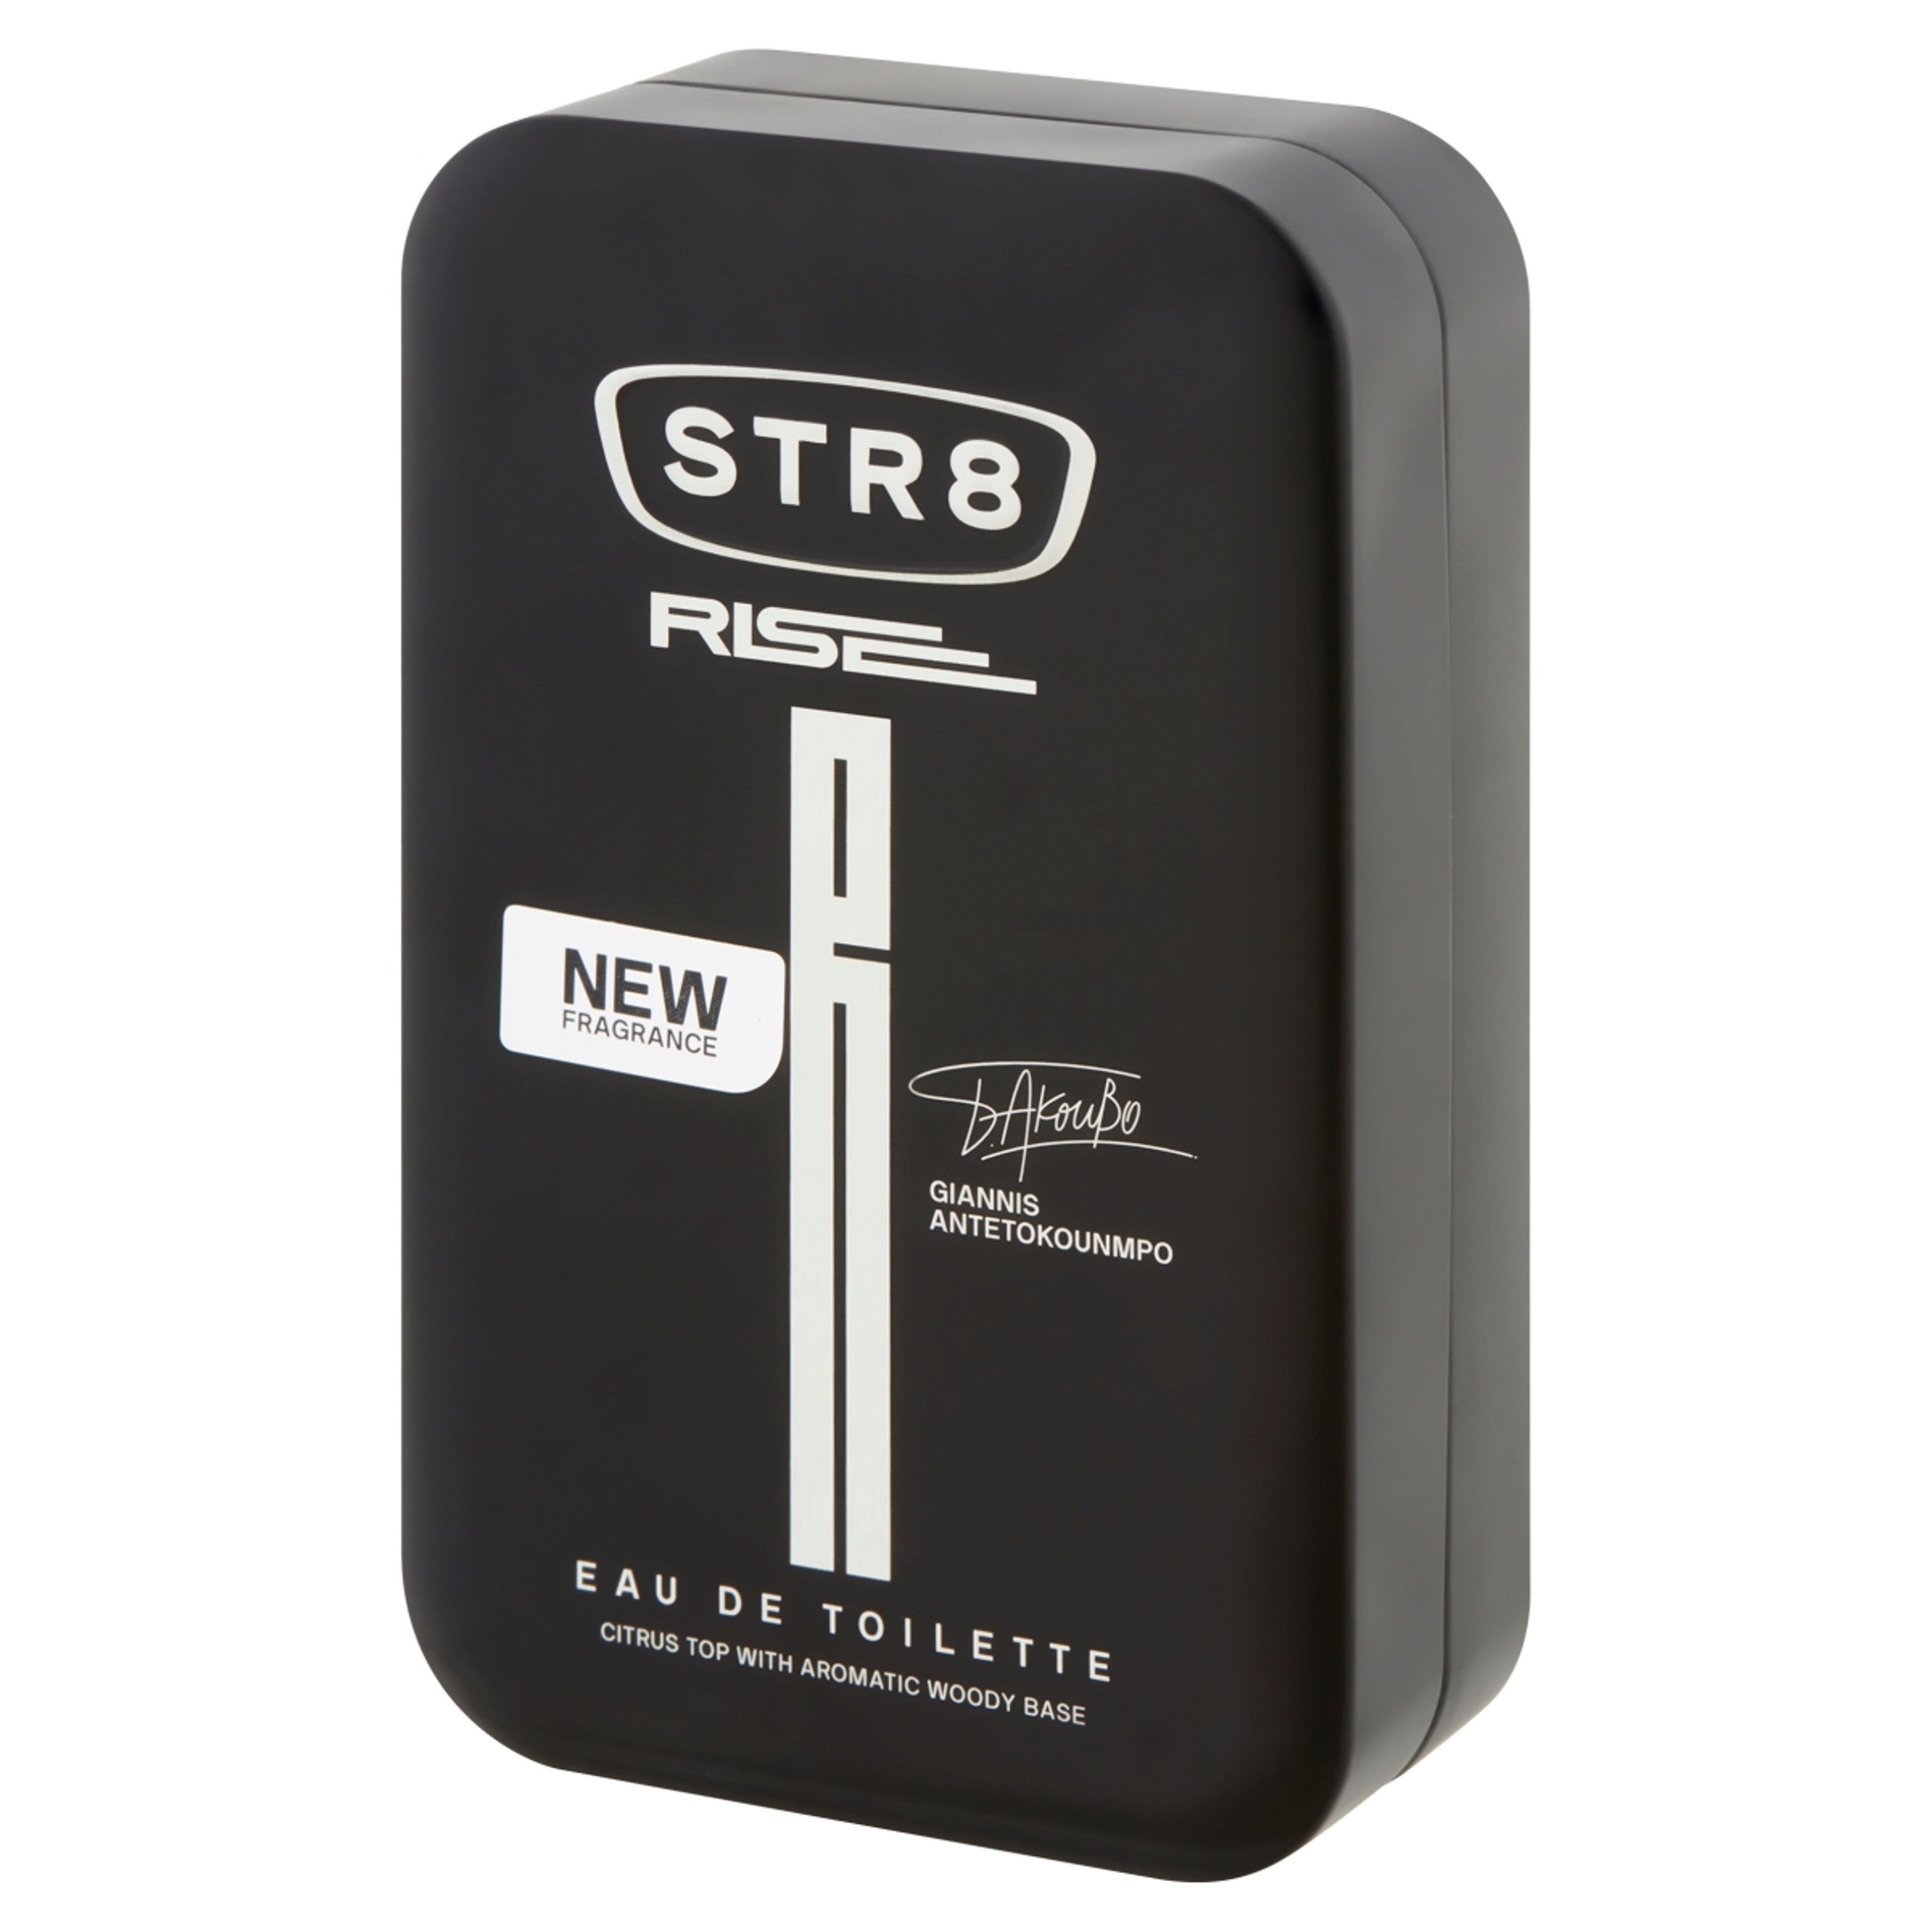 STR8 Rise férfi Eau de Toilette - 50 ml-2